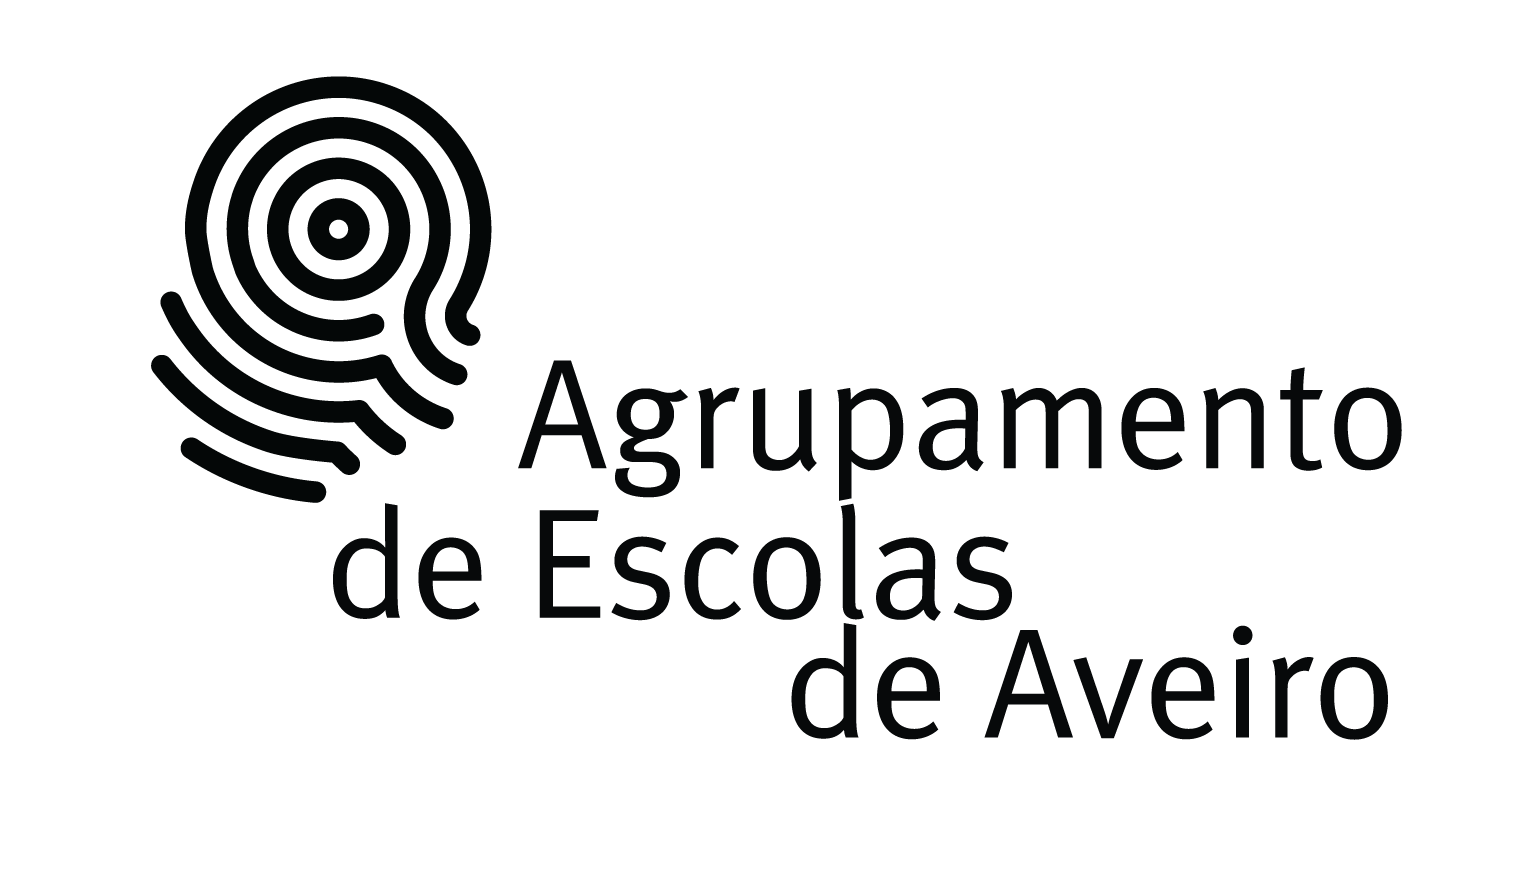 Logotipo do Agrupamento de Escolas de Aveiro – preto e branco